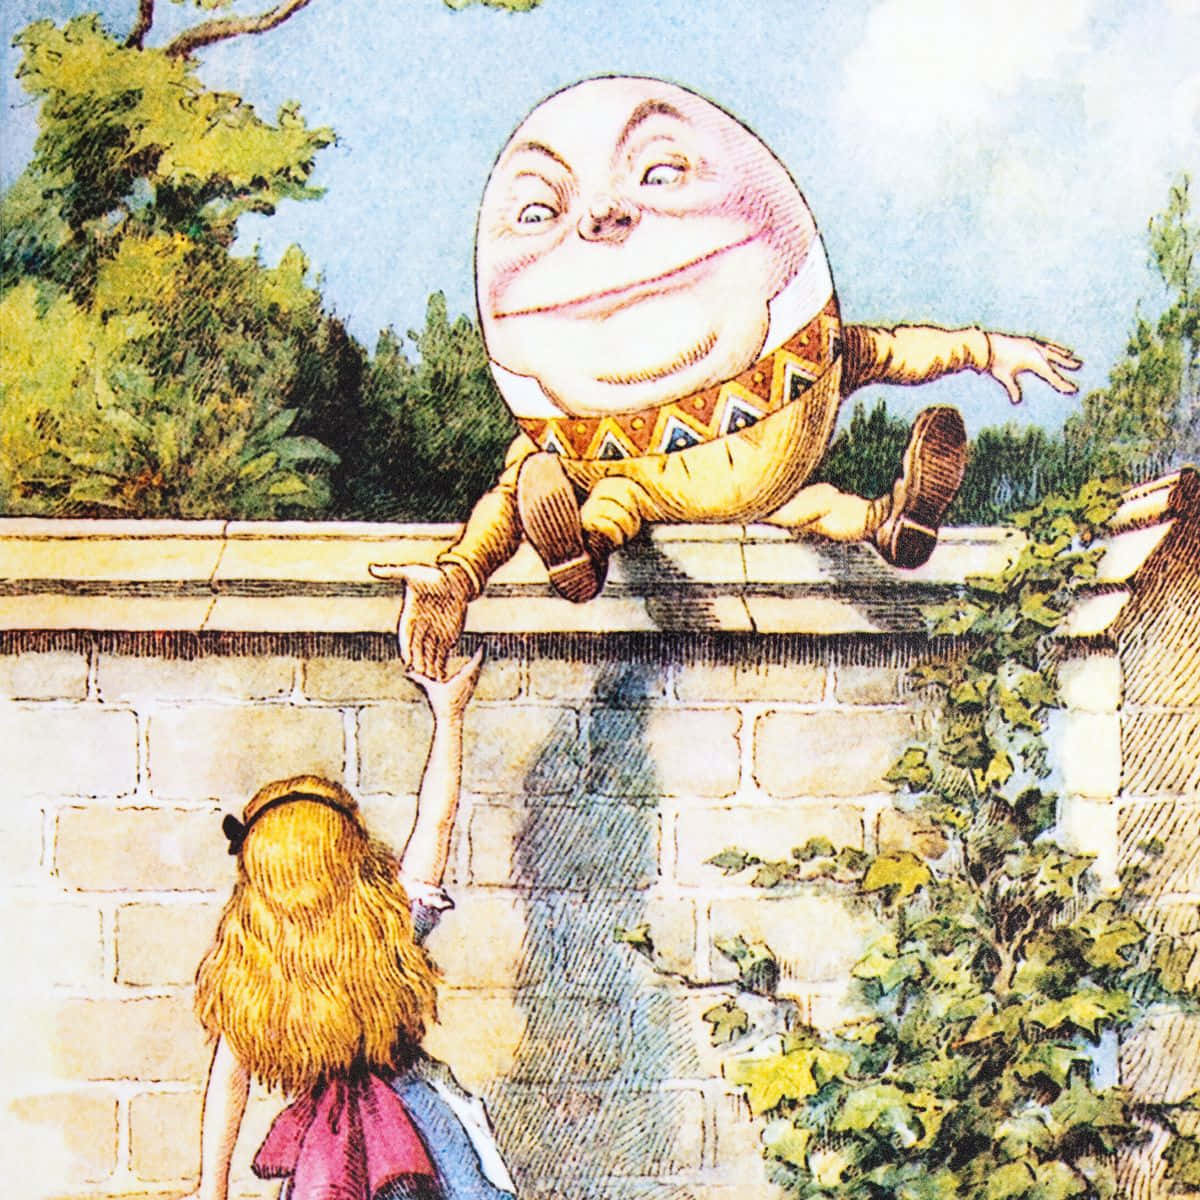 Imagende Humpty Dumpty Ayudando A La Niña